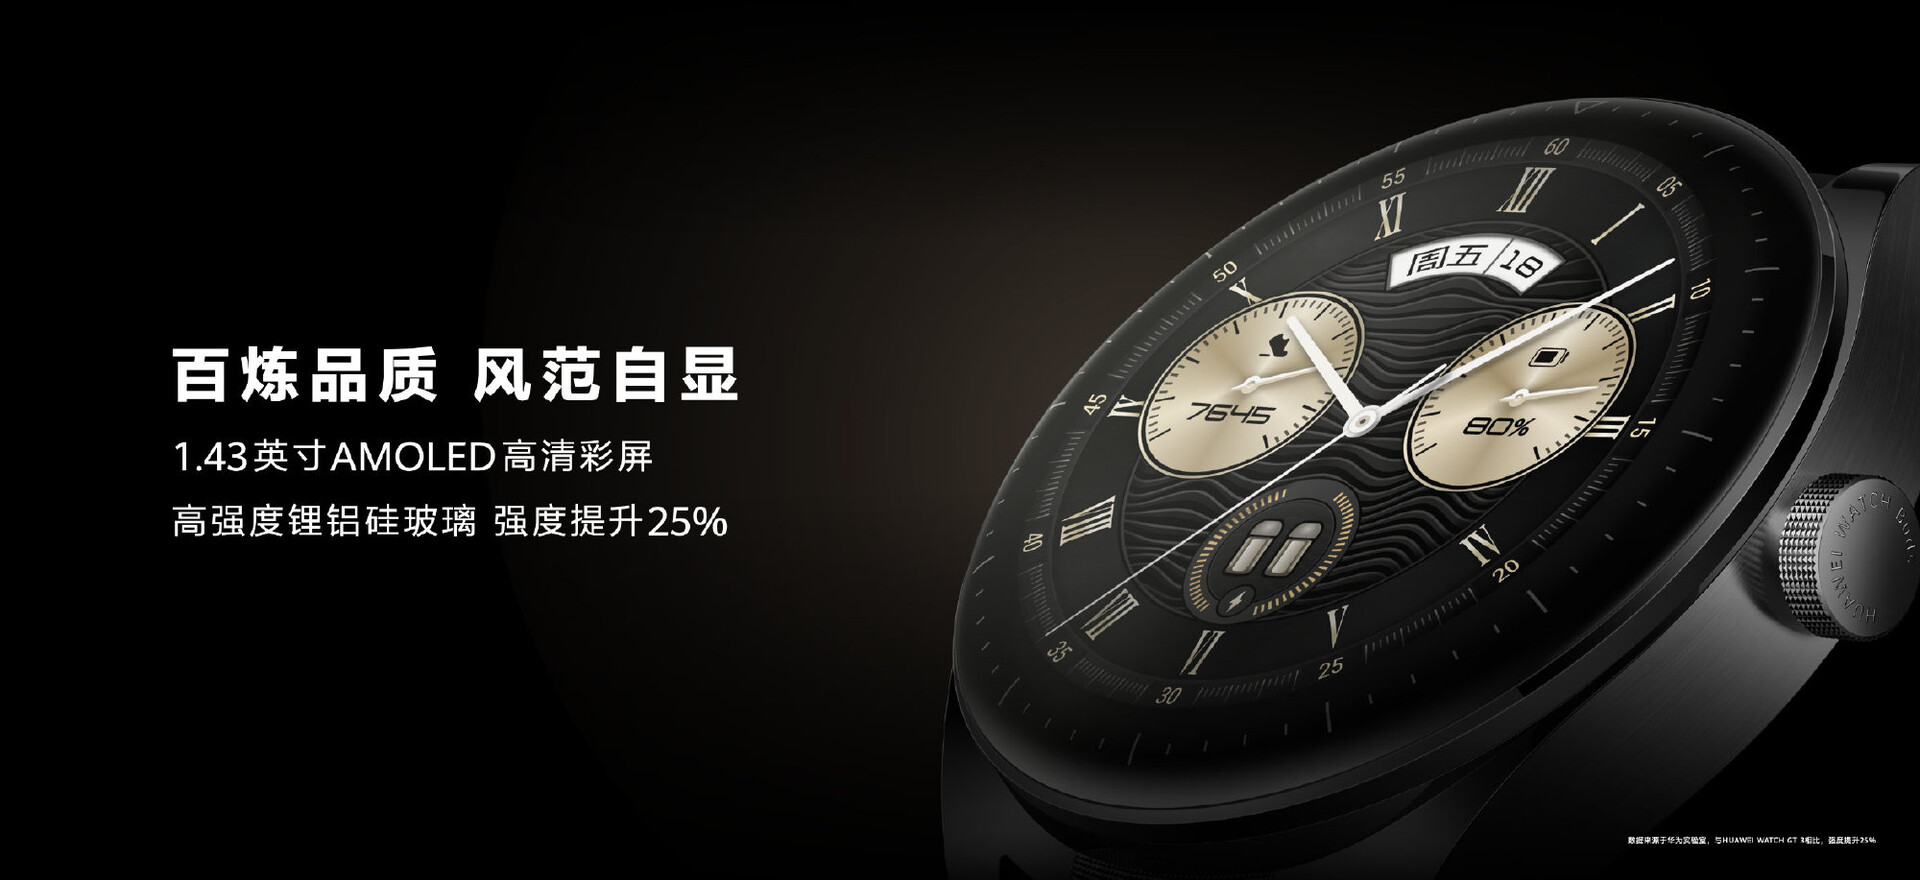 Huawei Watch Buds vorgestellt: Huawei verstaut Ohrhörer in schicker  Smartwatch mit aufklappbarem AMOLED-Display - Notebookcheck.com News